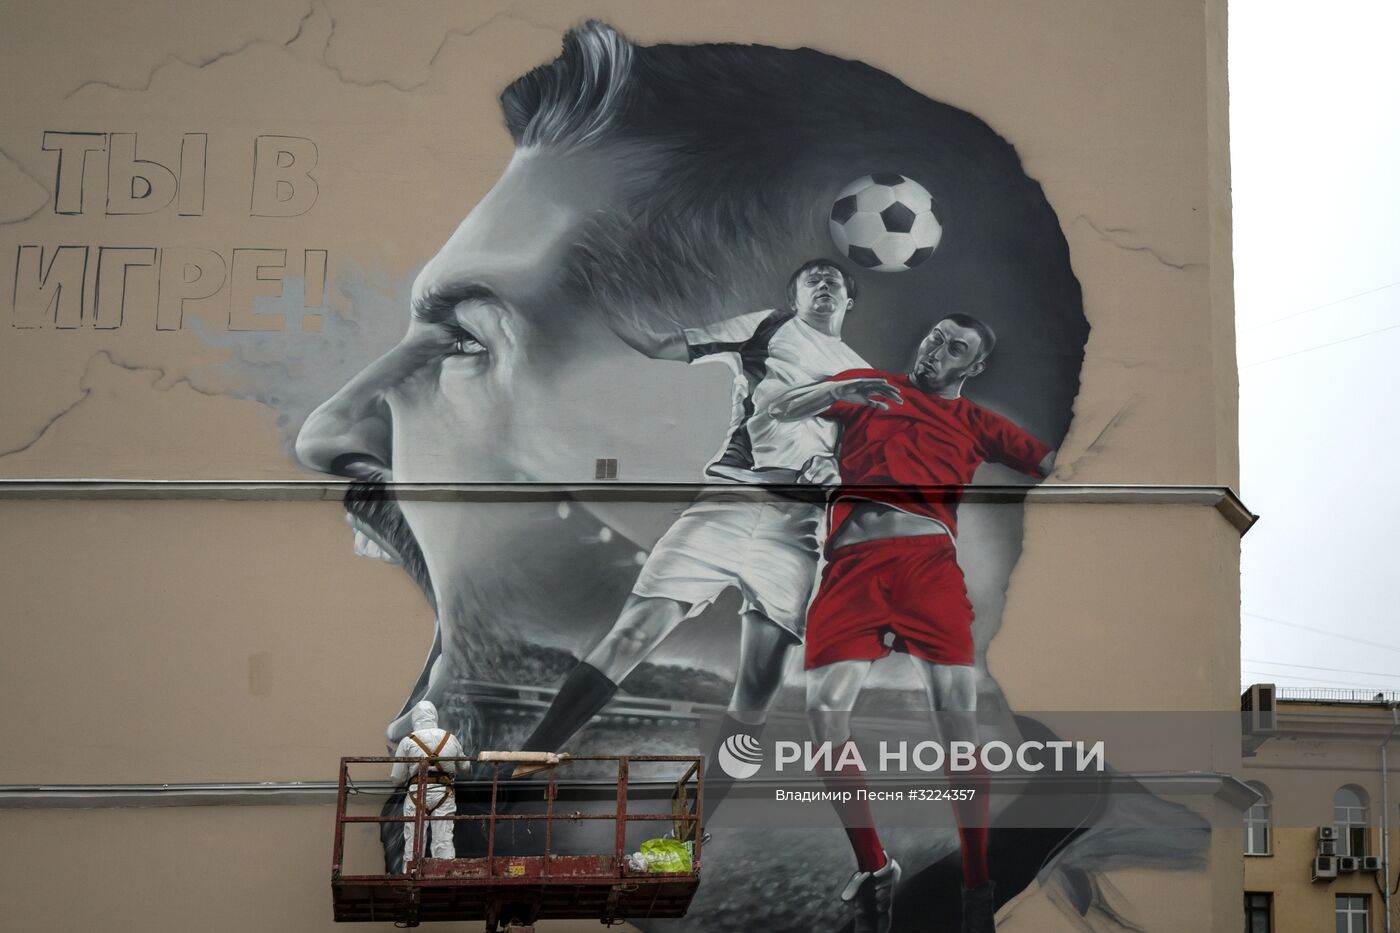 Граффити, посвященное ЧМ-2018, появилось в Москве